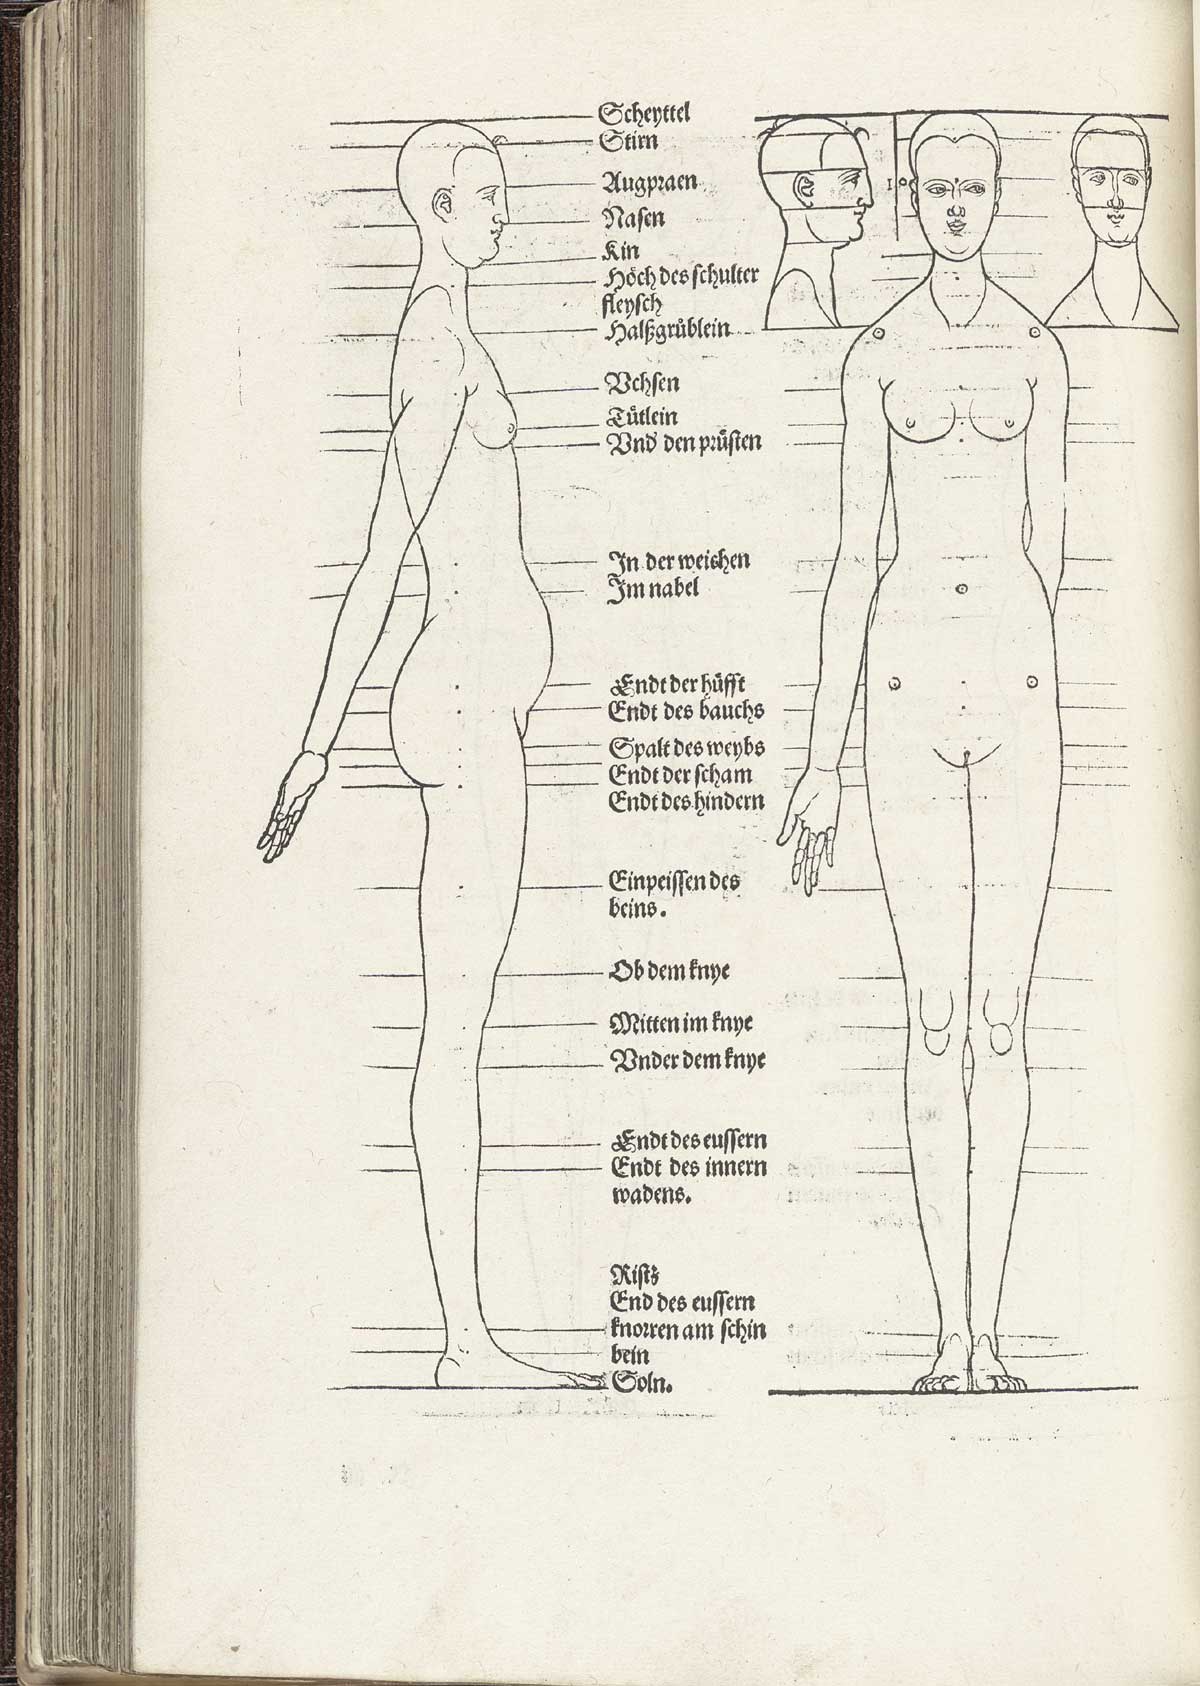 Tall thin female figure, from Albrecht Dürer’s Vier Bücher von menschlicher Proportion, NLM Call no. WZ 240 D853v 1528.